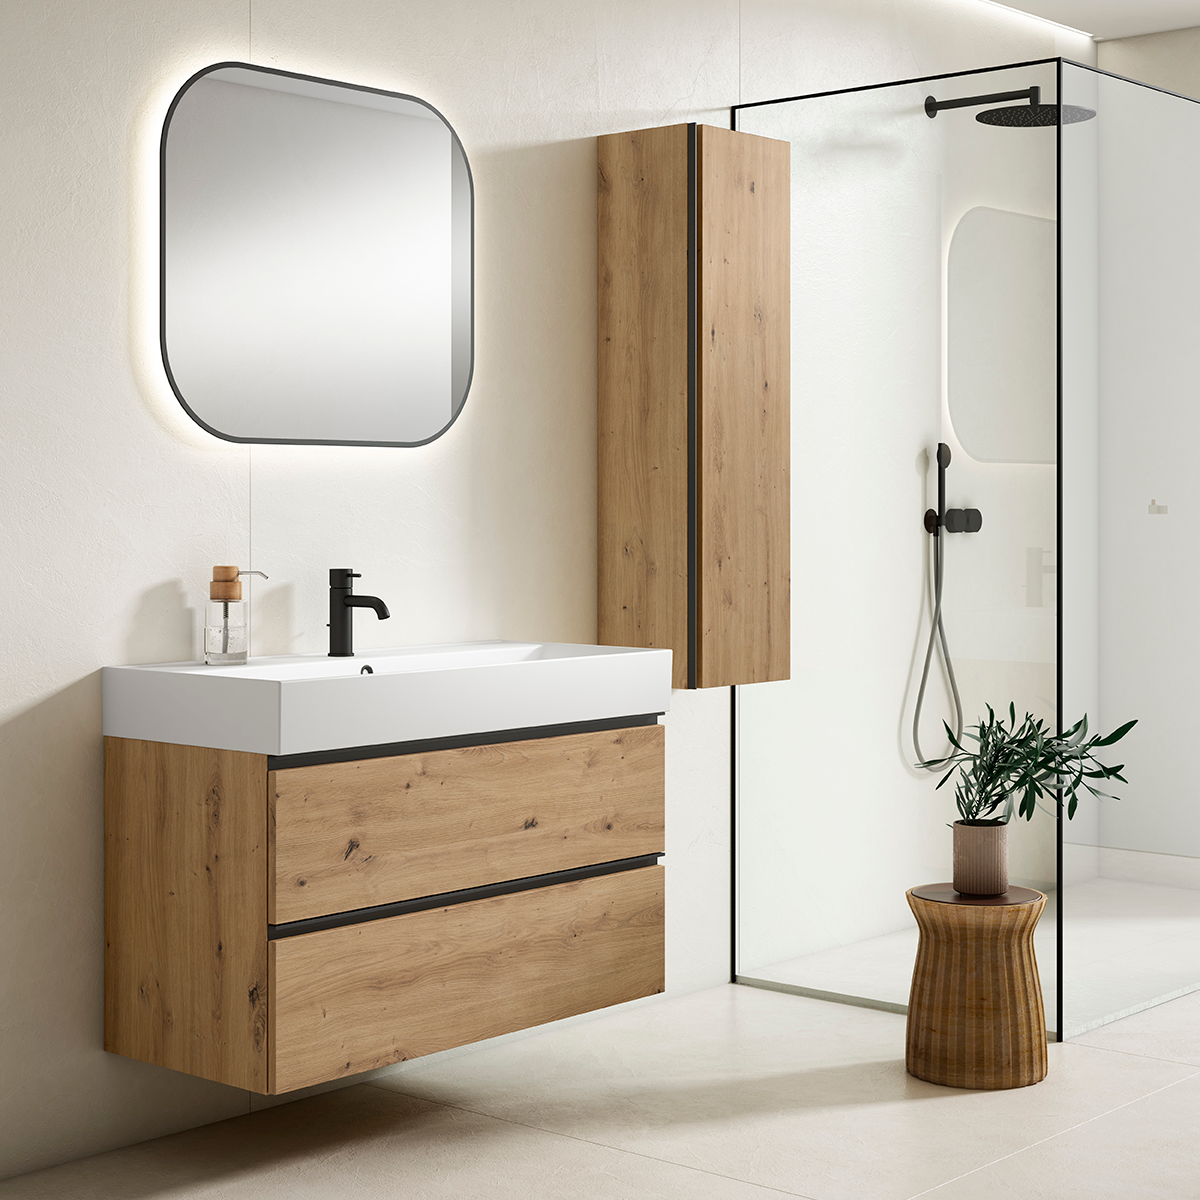 Lavabo de baño con mueble colgante con diseño moderno